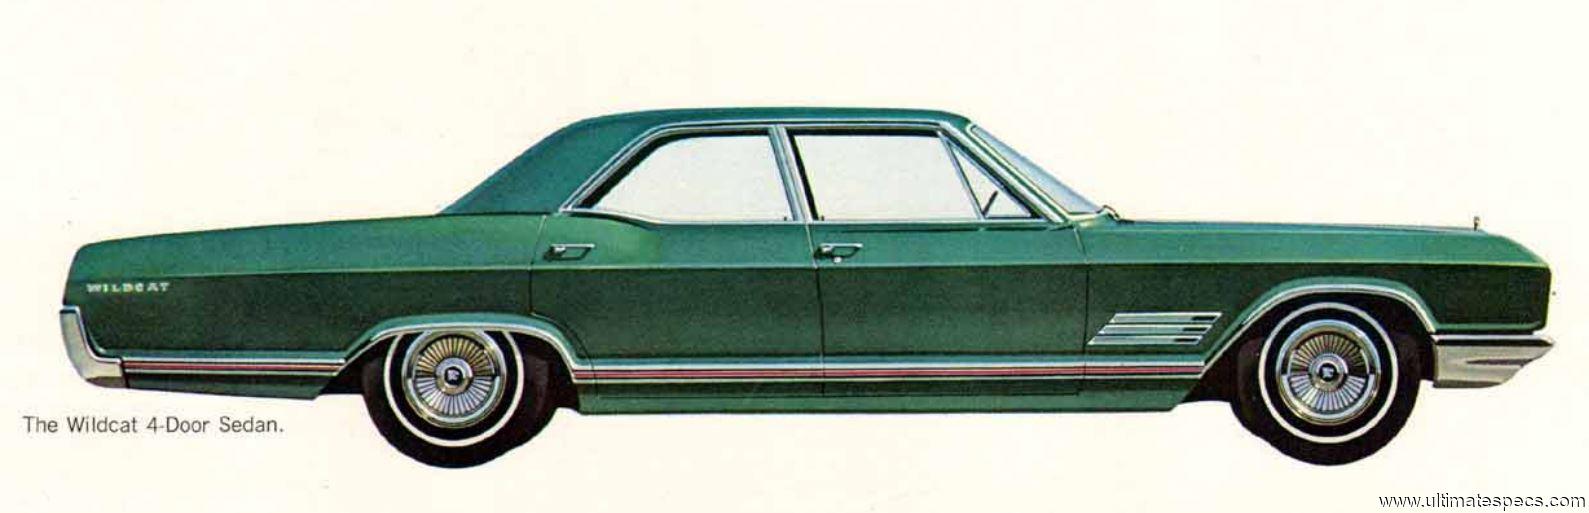 Buick Wildcat 4-Door Sedan 1966